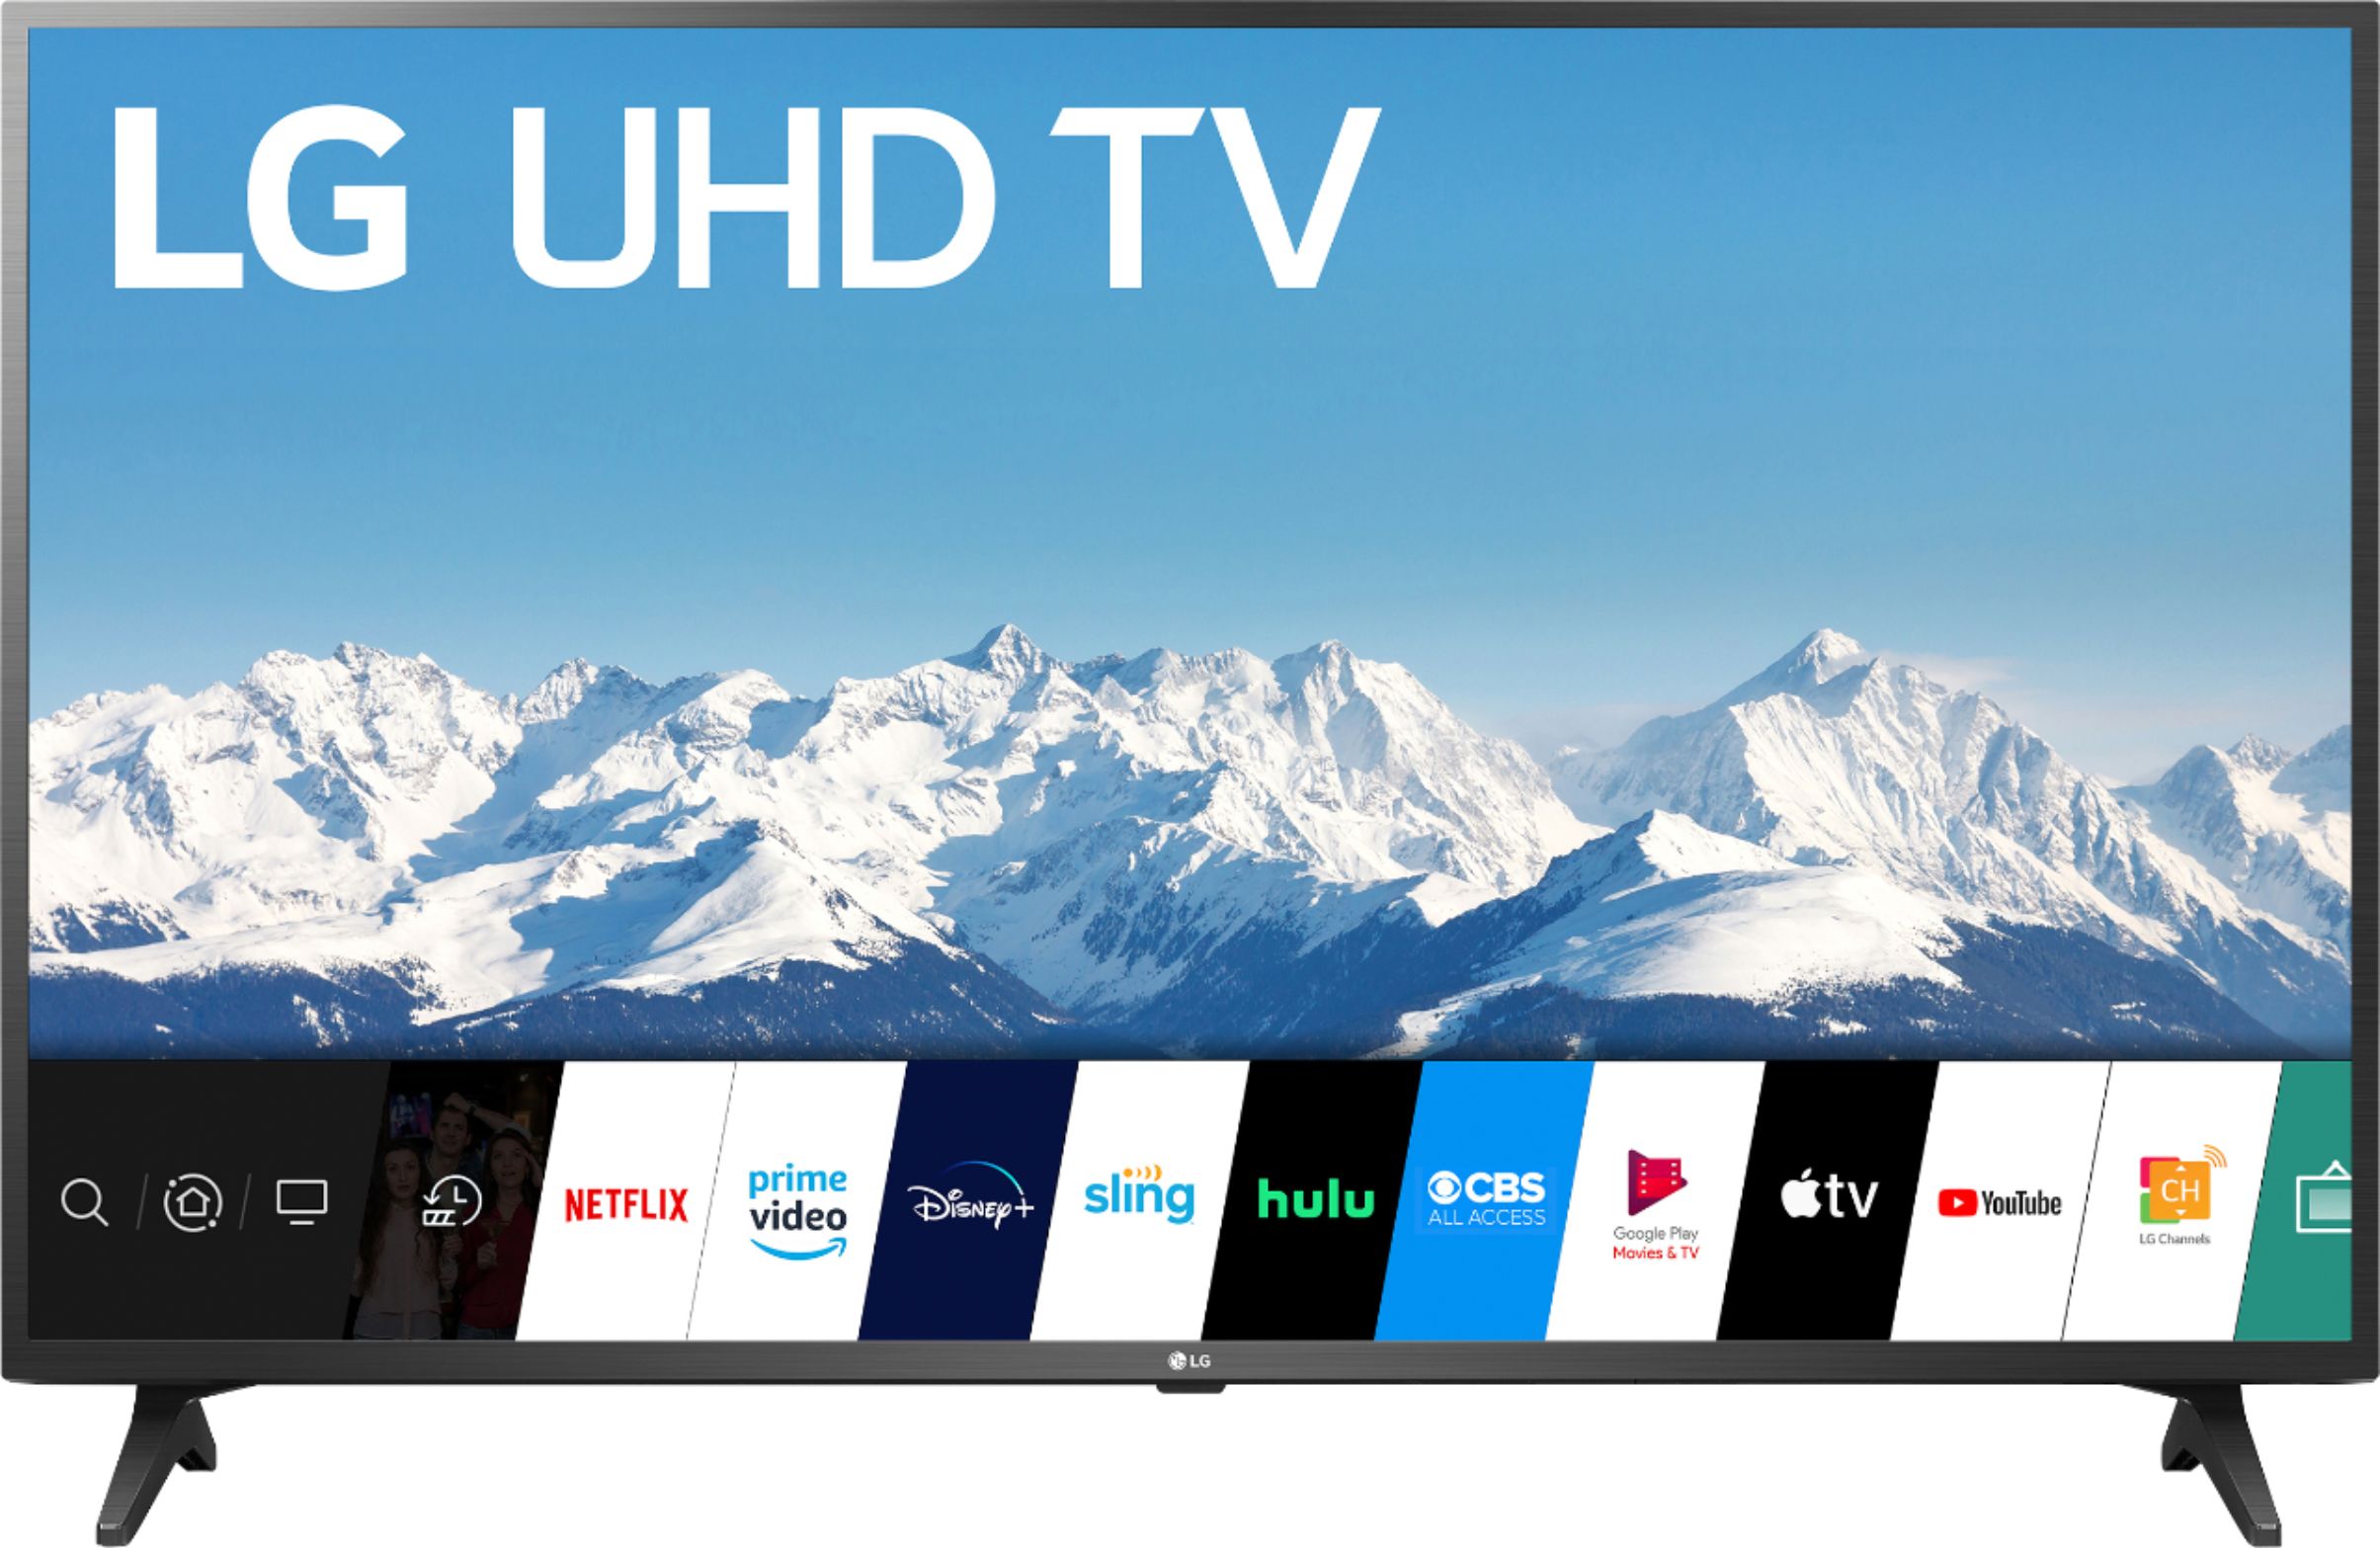 LG UHD TV 55 4K Smart AI - 55UN7300PSC